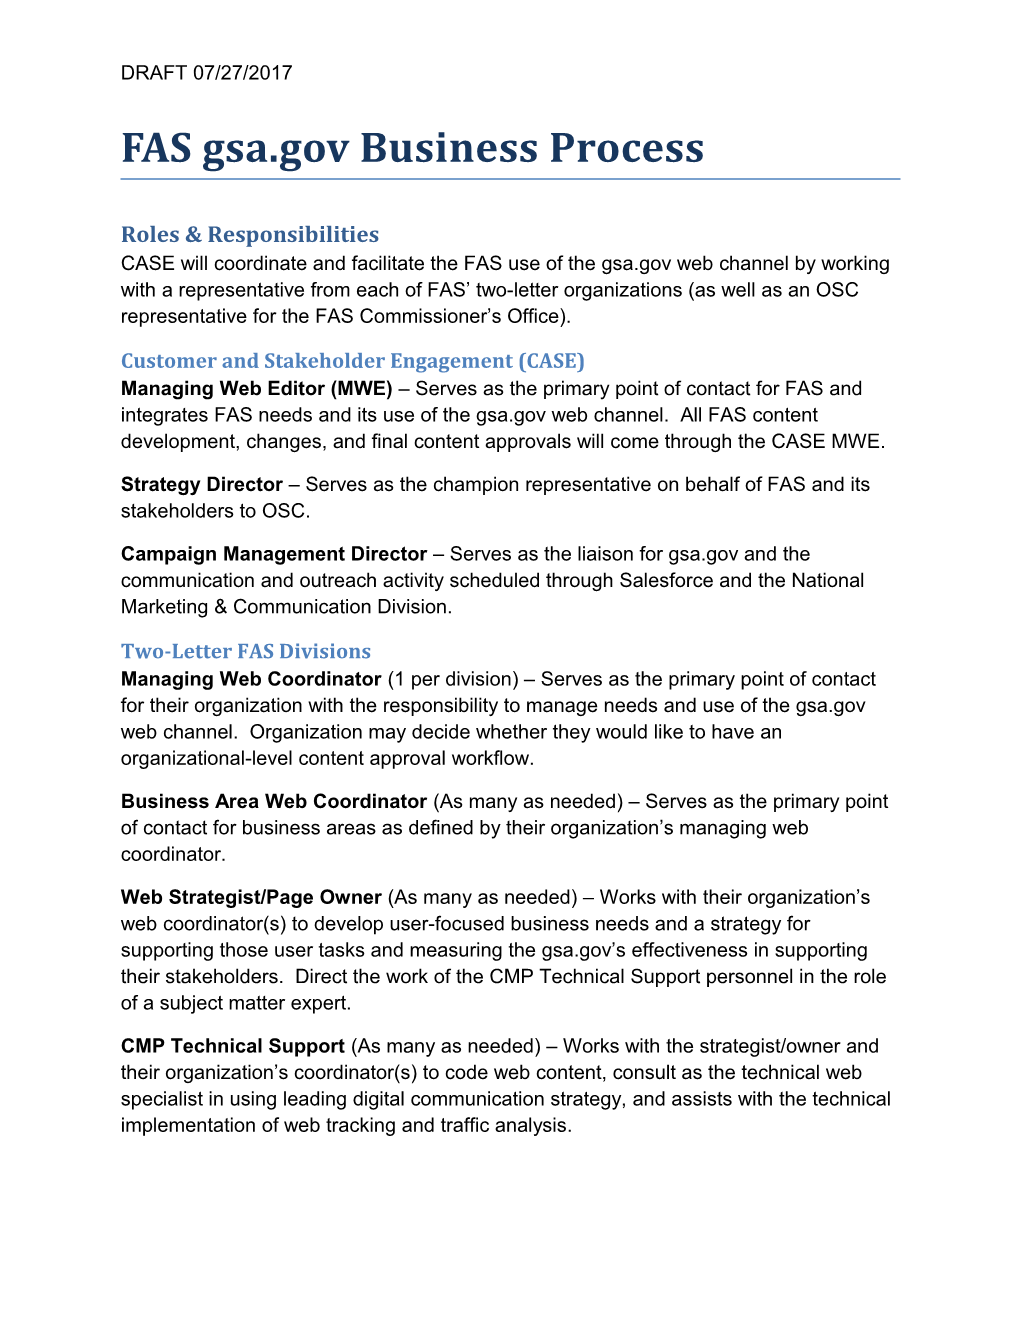 FAS Gsa.Gov Business Process